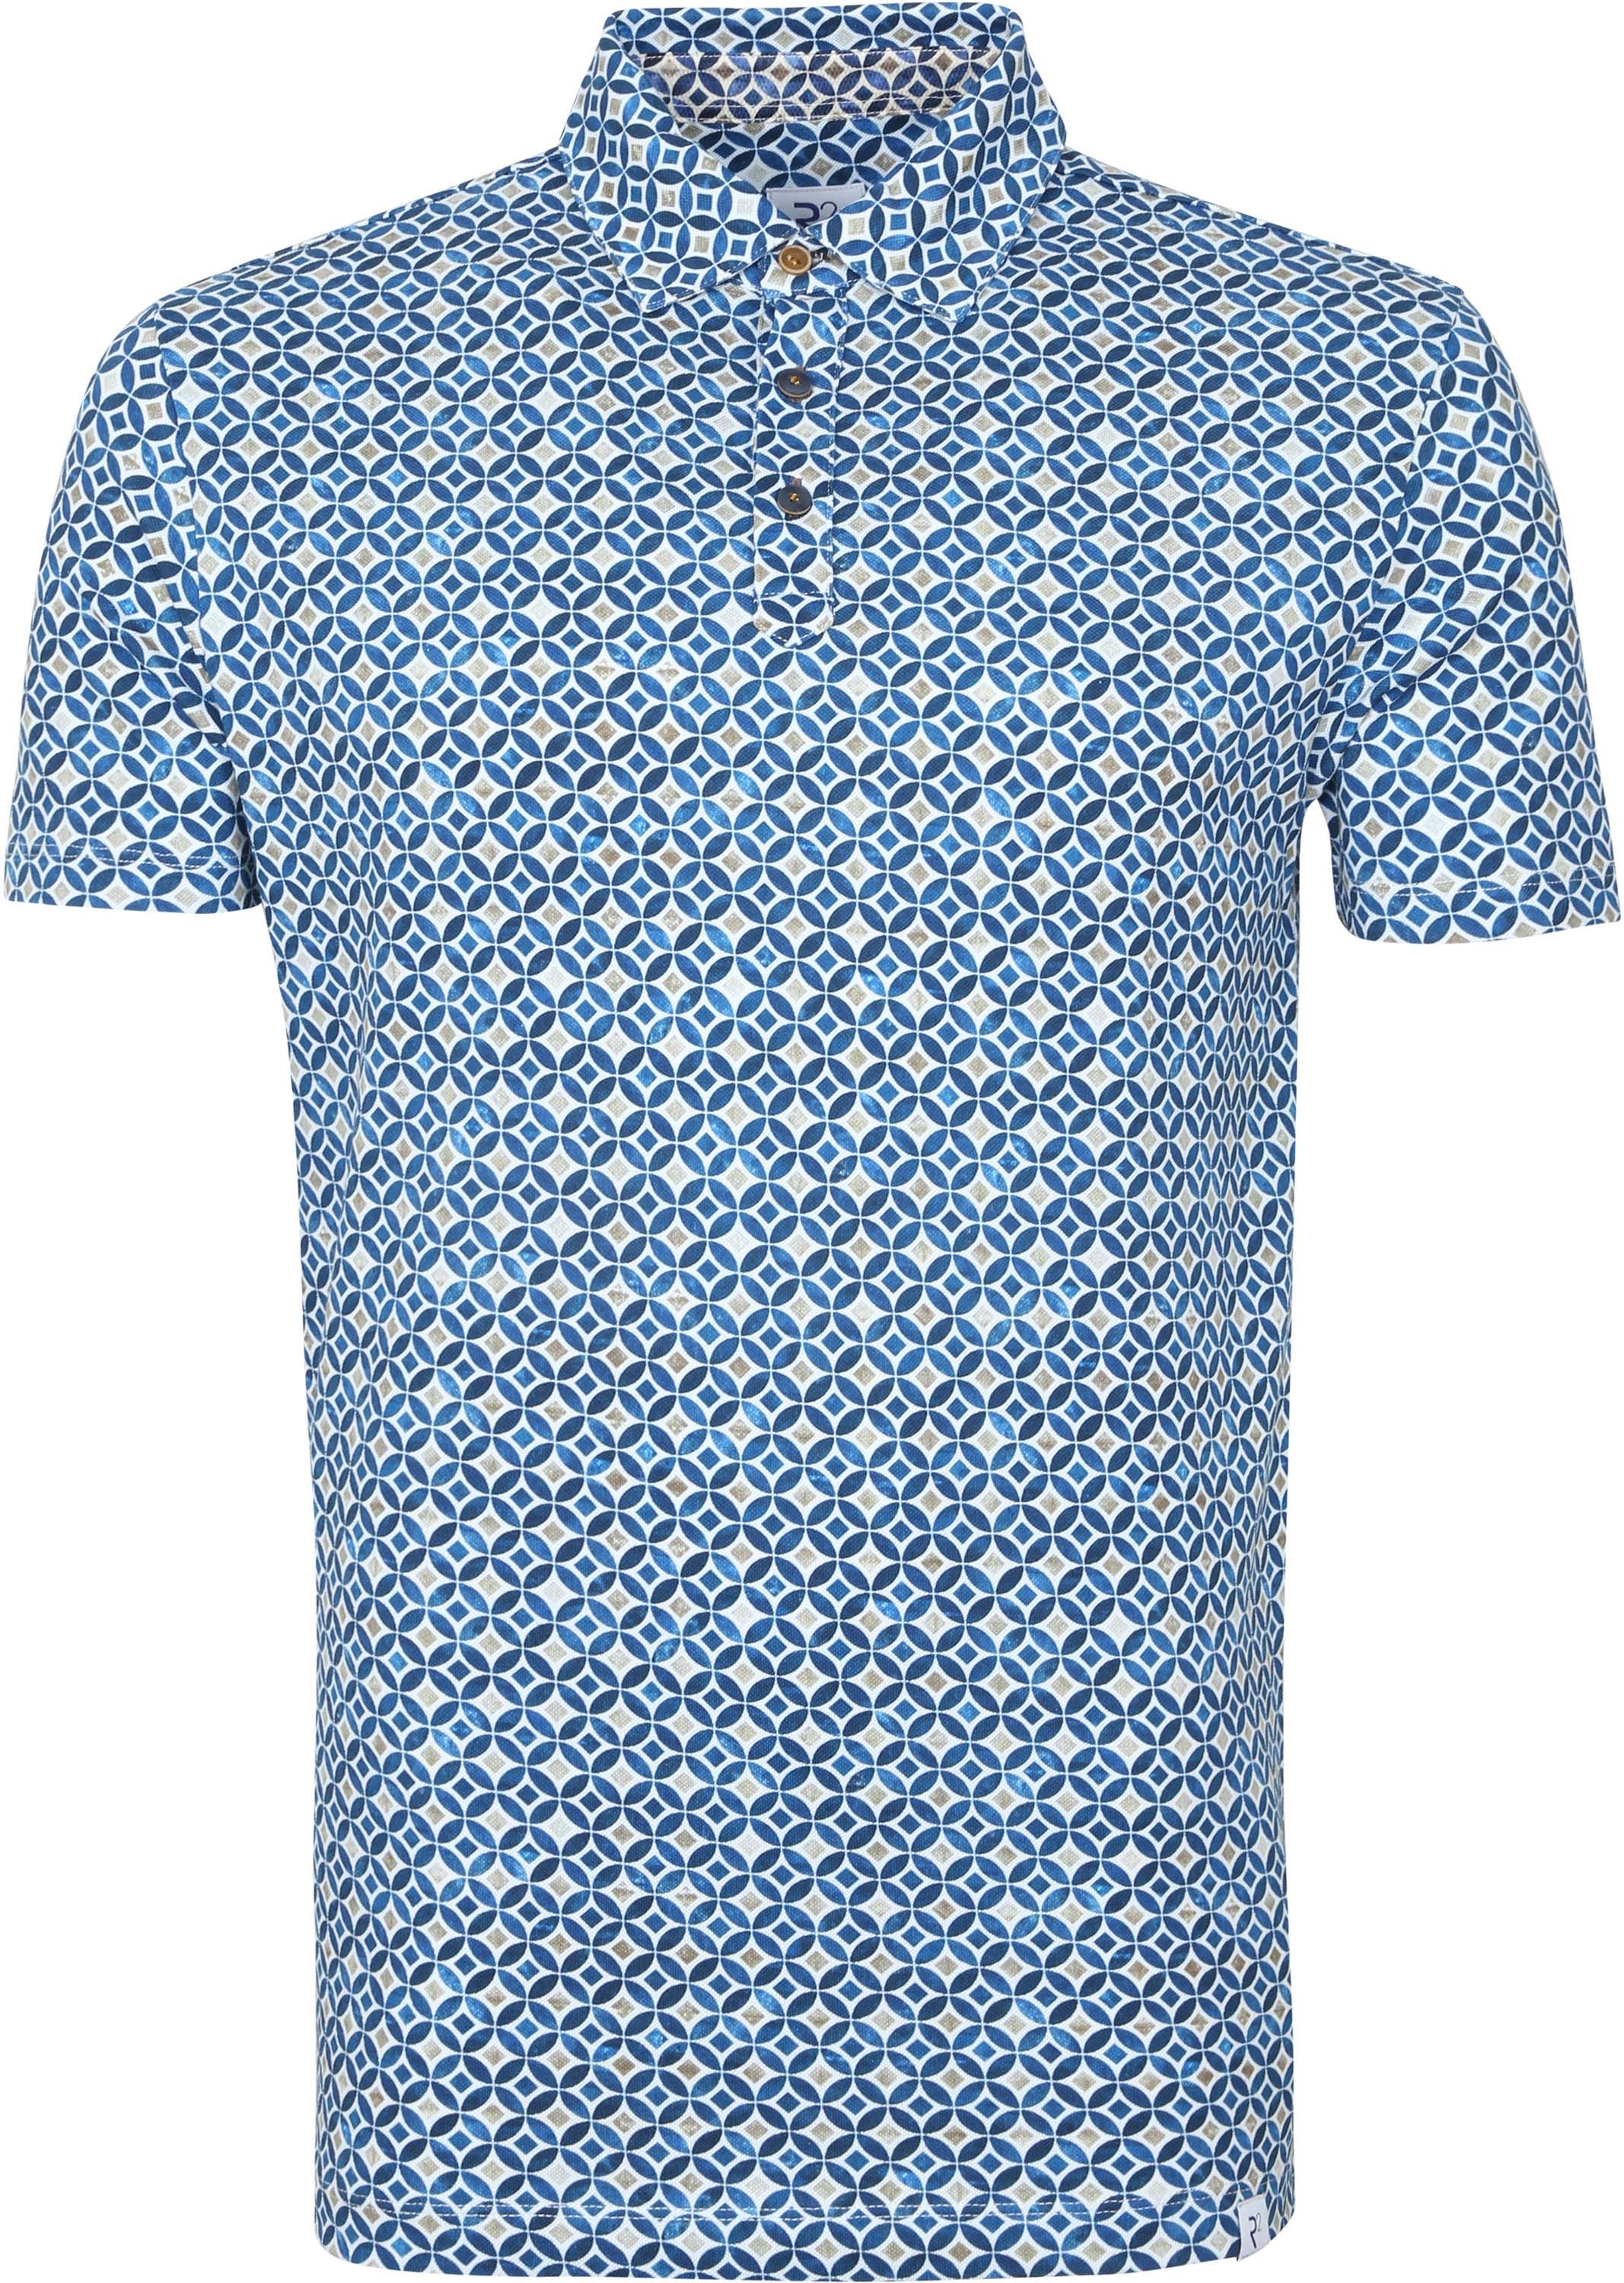 R2 Polo Shirt Sparkle Blue Multicolour size S